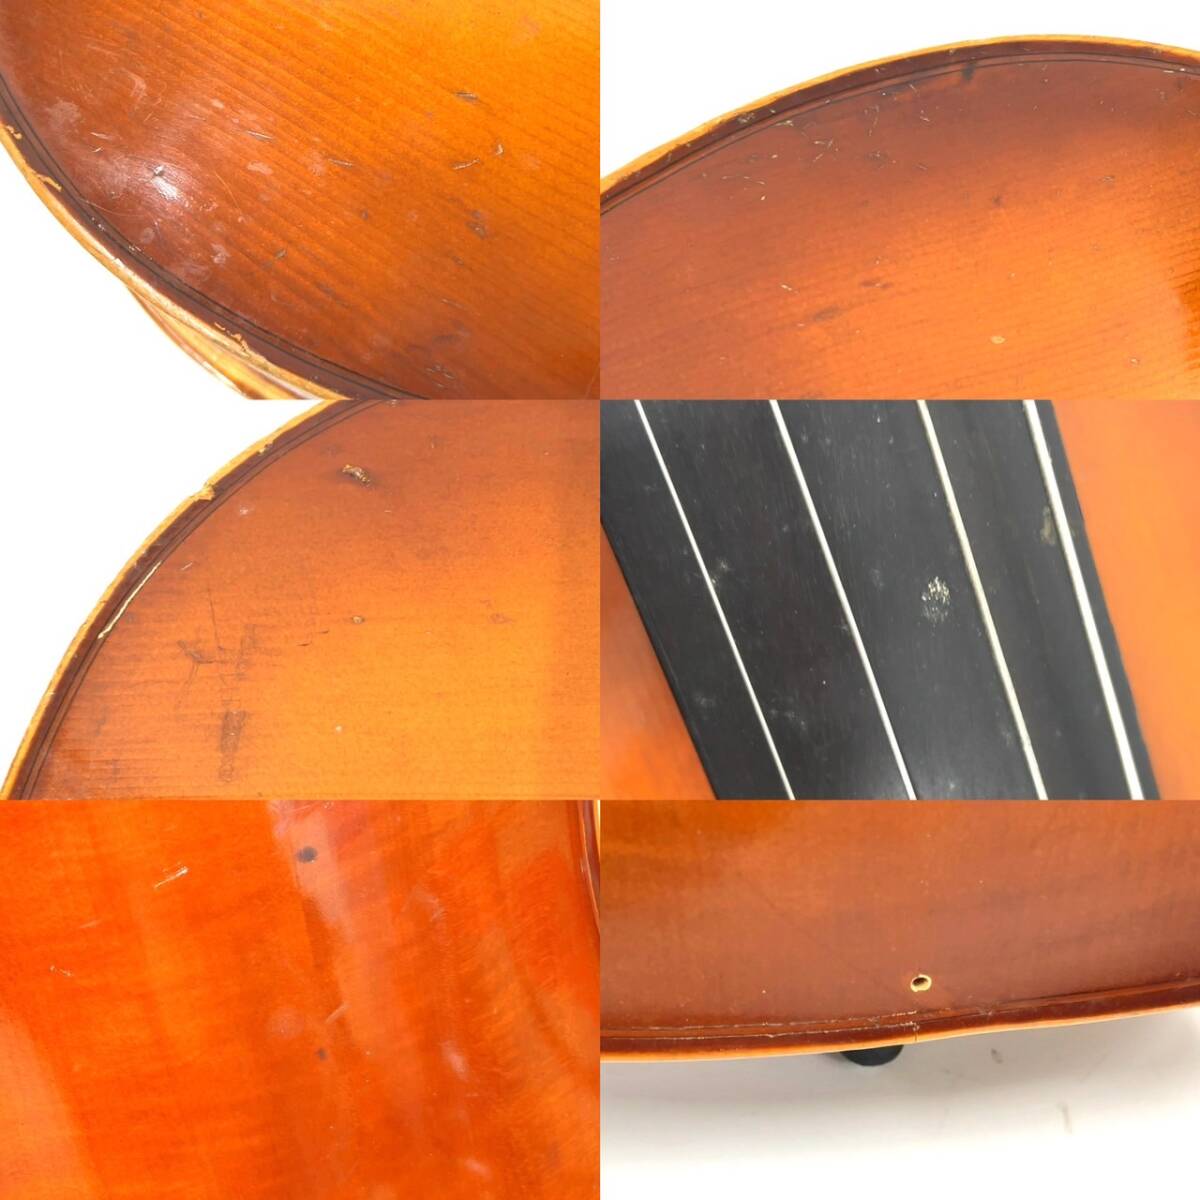 L129-W13-928 佐川 Kiso Suzuki Copy of Antonius Stradivarius1720 anno 1972 4/4 No.4 チェロ 楽器 弦楽器 ケース付き 約125×45×15cm③の画像10